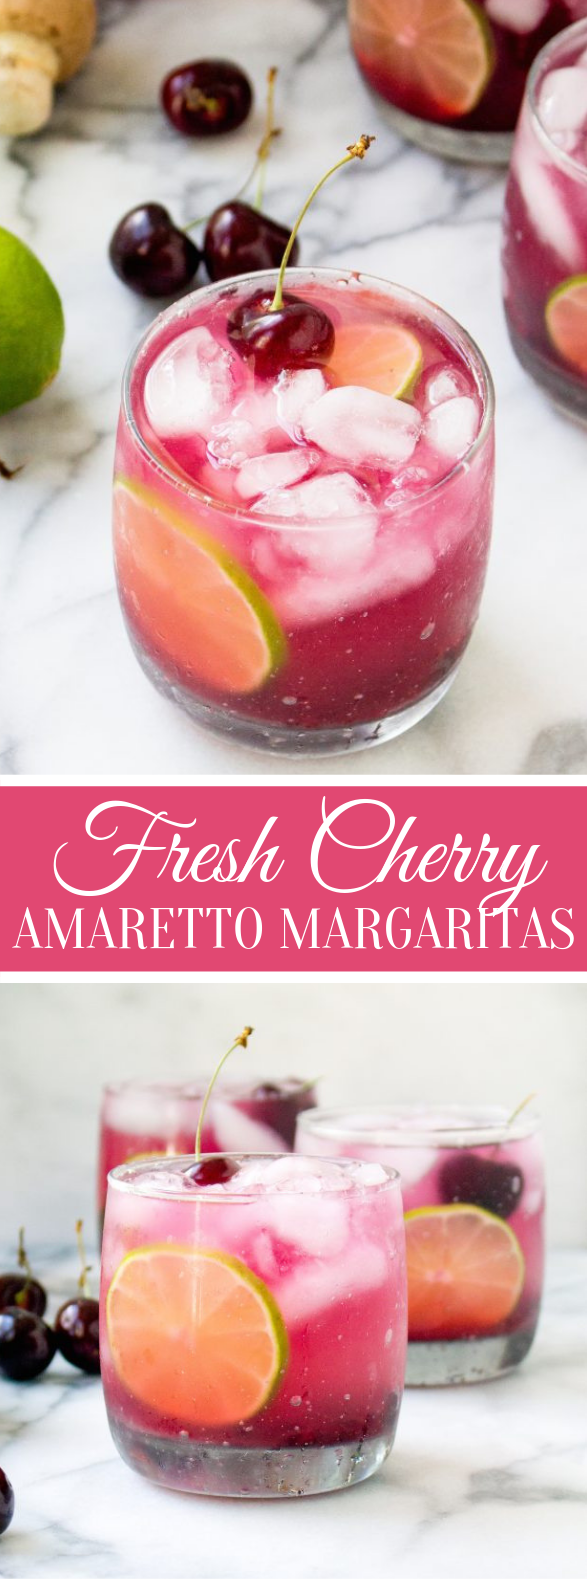 FRESH CHERRY AMARETTO MARGARITAS #drinks #cocktails